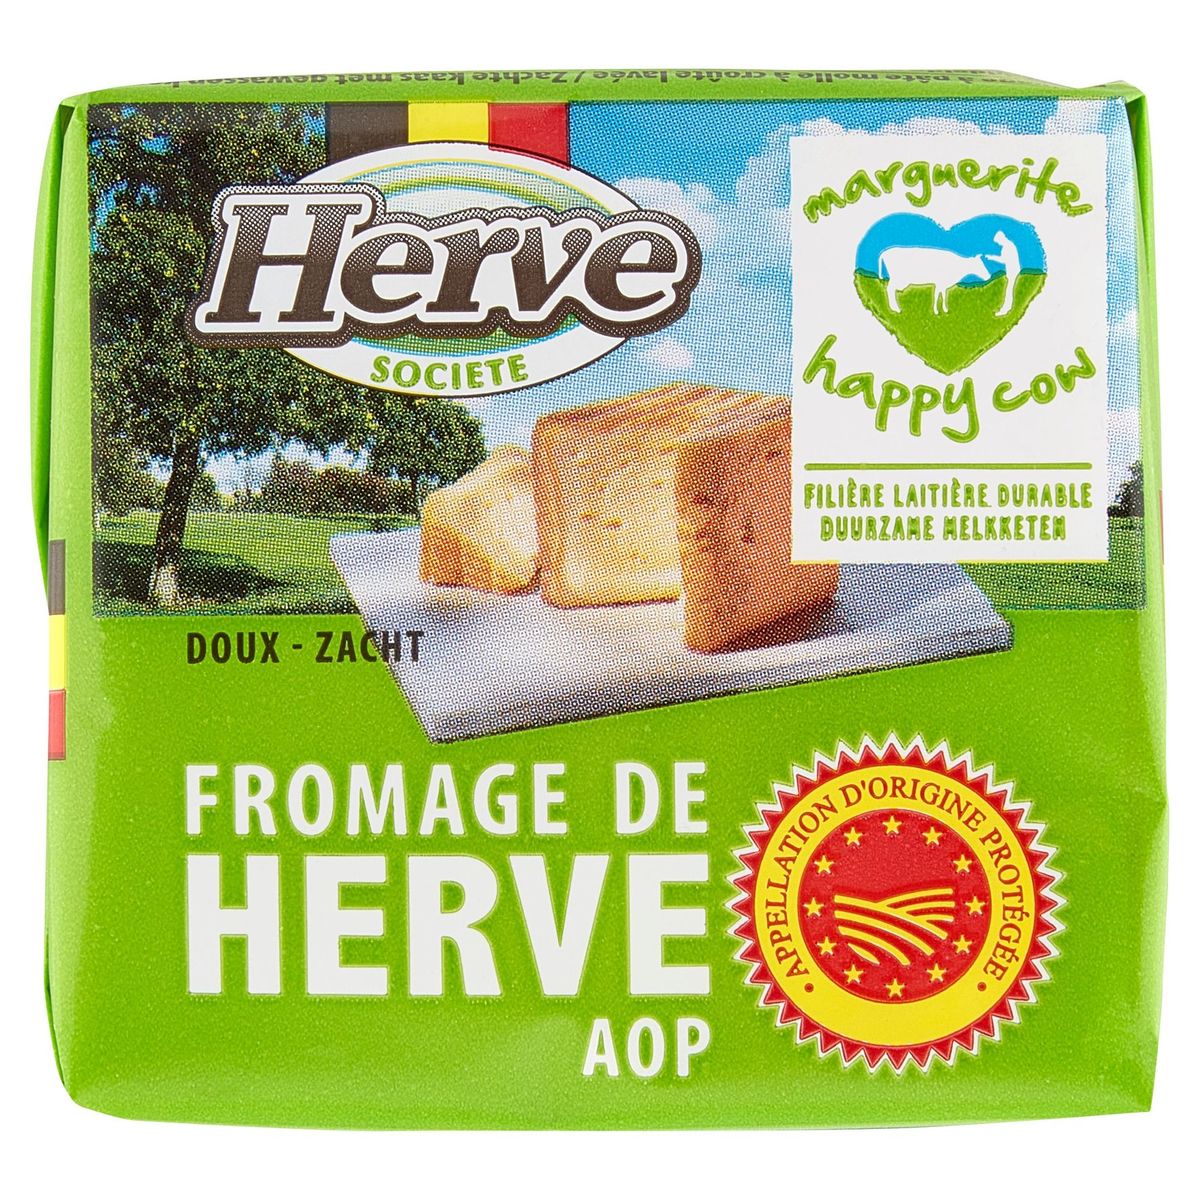 Herve Société Fromage de Herve AOP Zacht 200 g